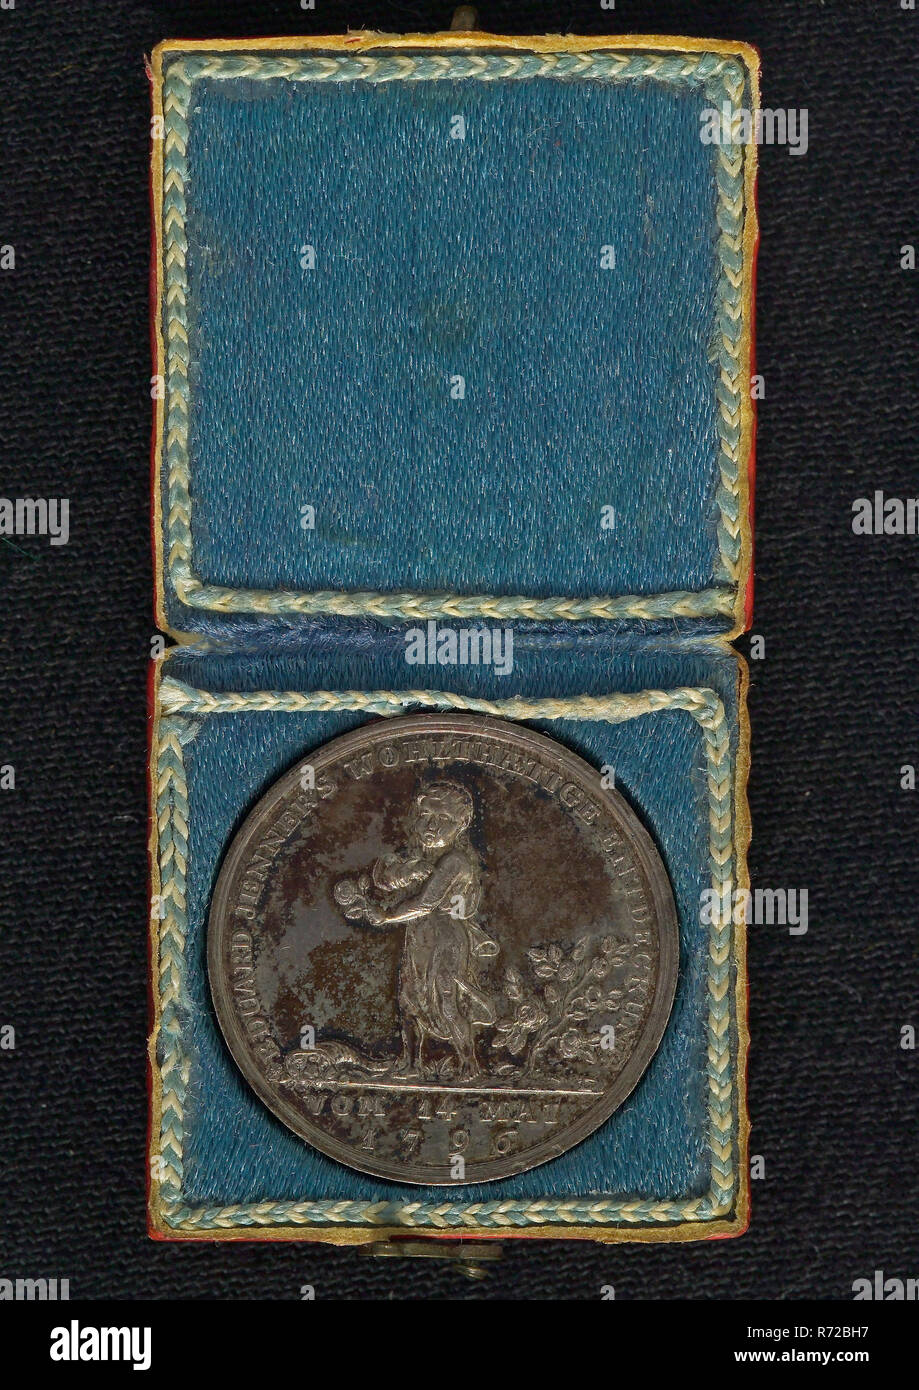 Medaglia nella scatola ... cowpoc inoculazione, medaglione medaglia medaglia  titolare titolare di scatola di cartone involucro metallo tessile, medaglia  su Edward Jenner (17 maggio 1749 - 26 gennaio 1823) un medico inglese